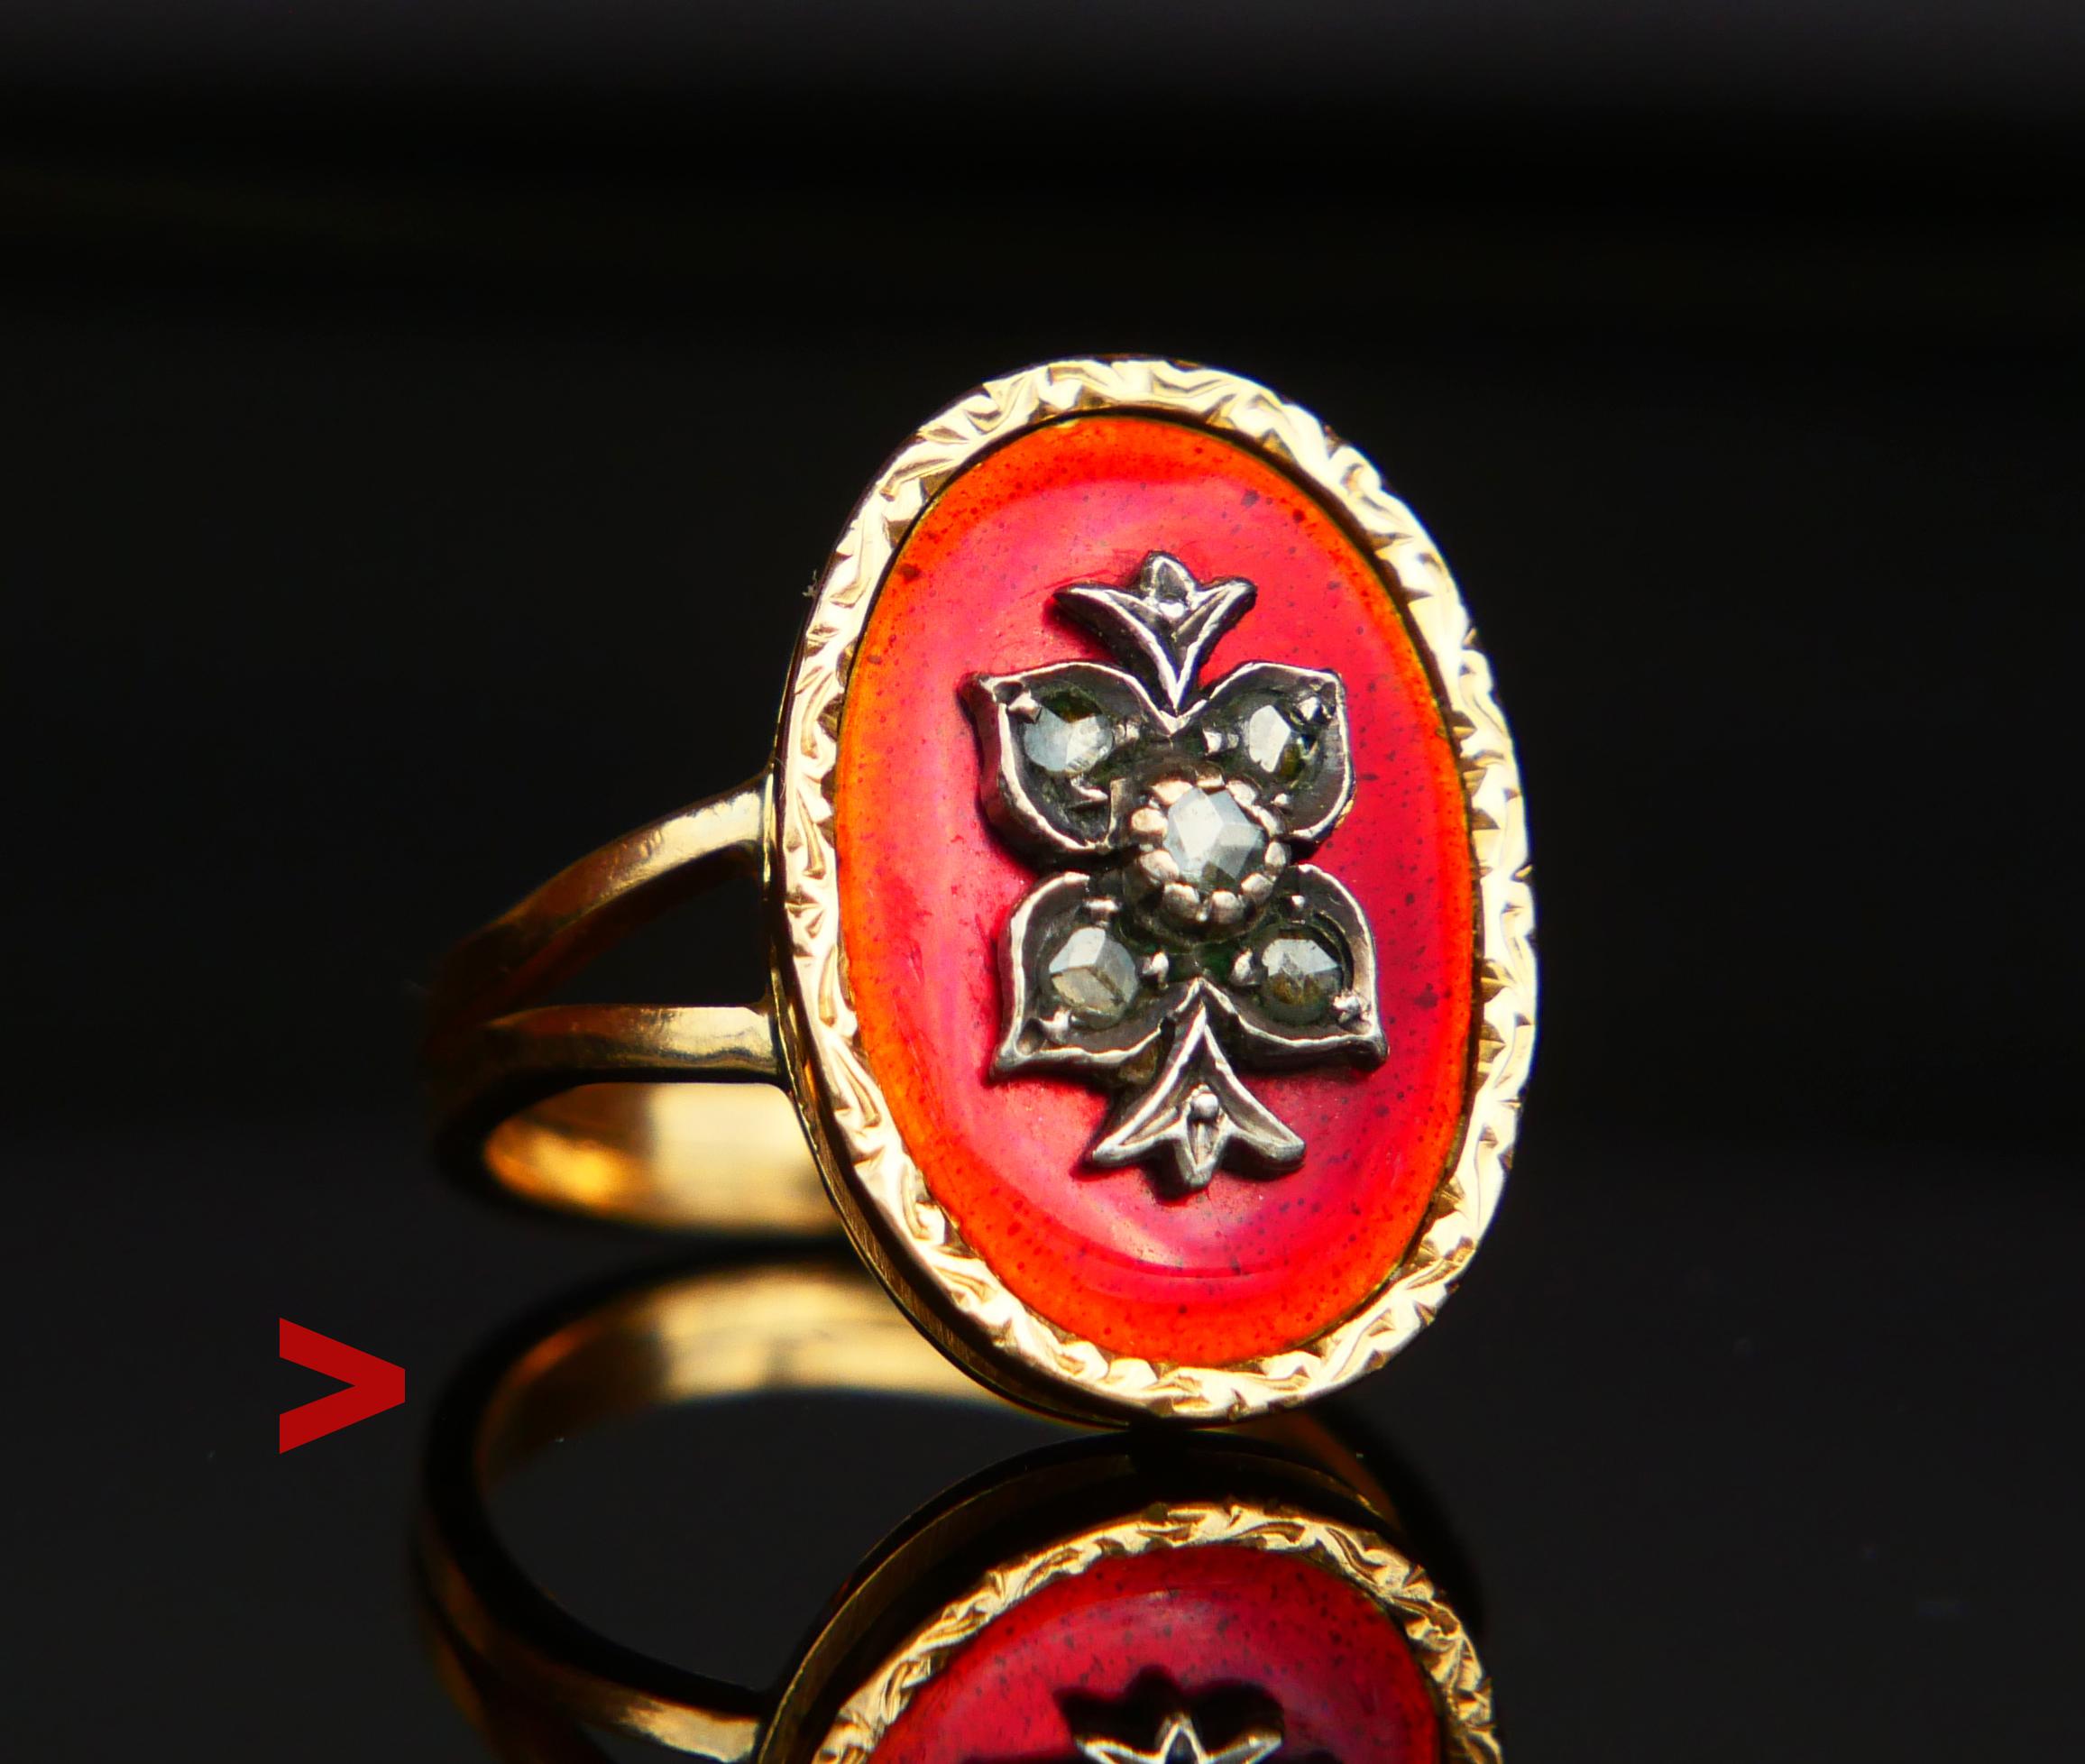 Ancienne bague russe ou finlandaise à la main - fabriquée entre la fin du 19e et le début du 20e siècle. Ornement floral avec diamants taillés en rose sur fond d'émail rouge translucide et moucheté. À partir de 1775, les bijoux en or ornés de